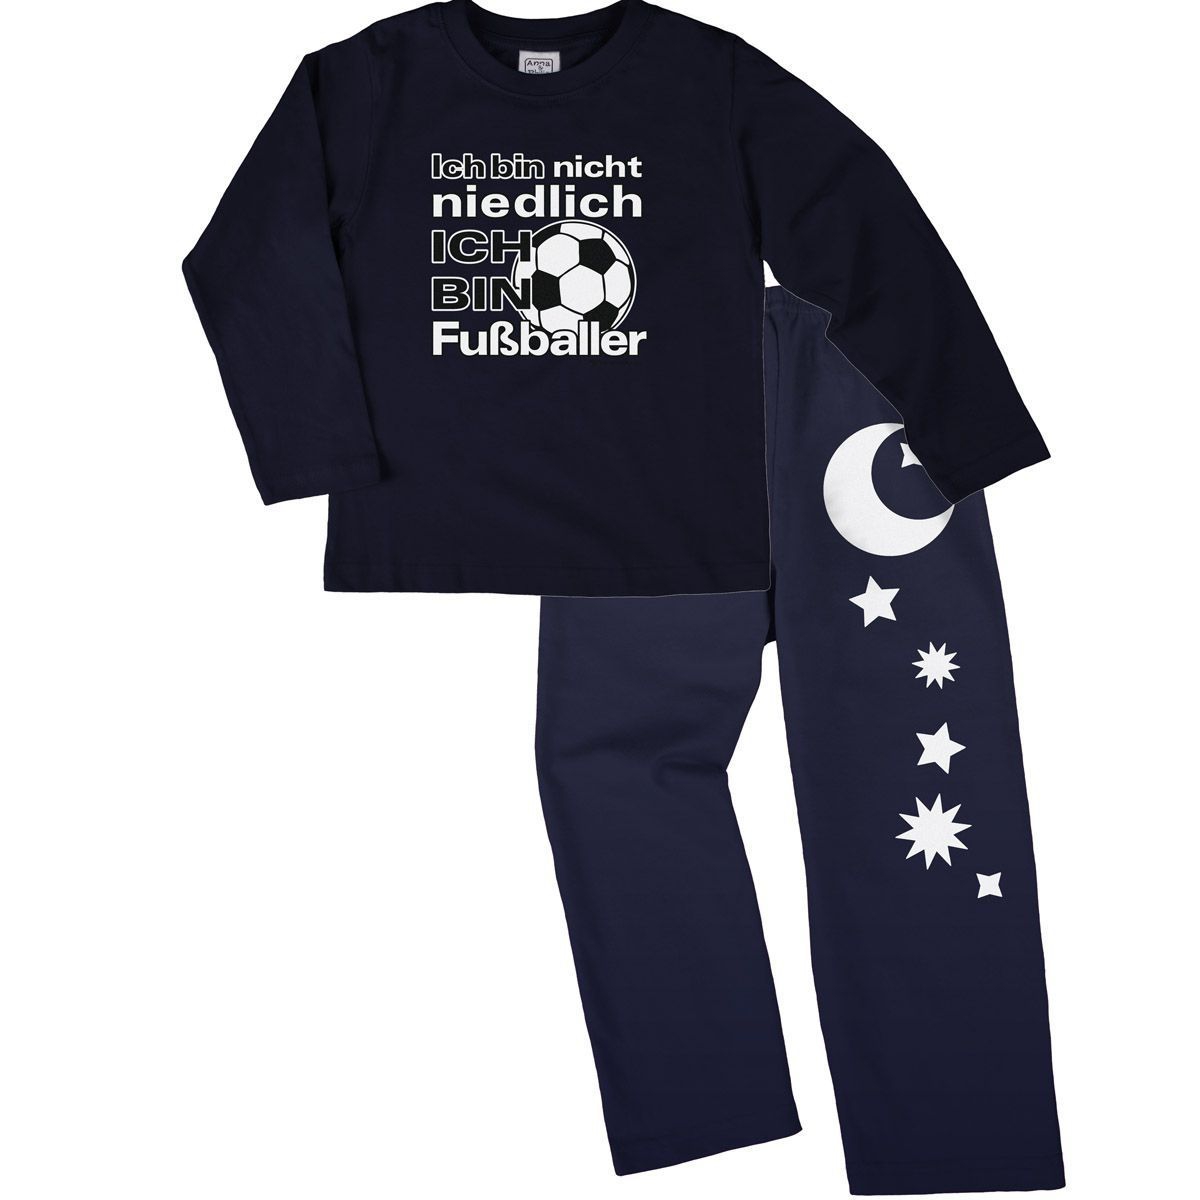 Niedlich Fußballer Pyjama Set navy / navy 110 / 116